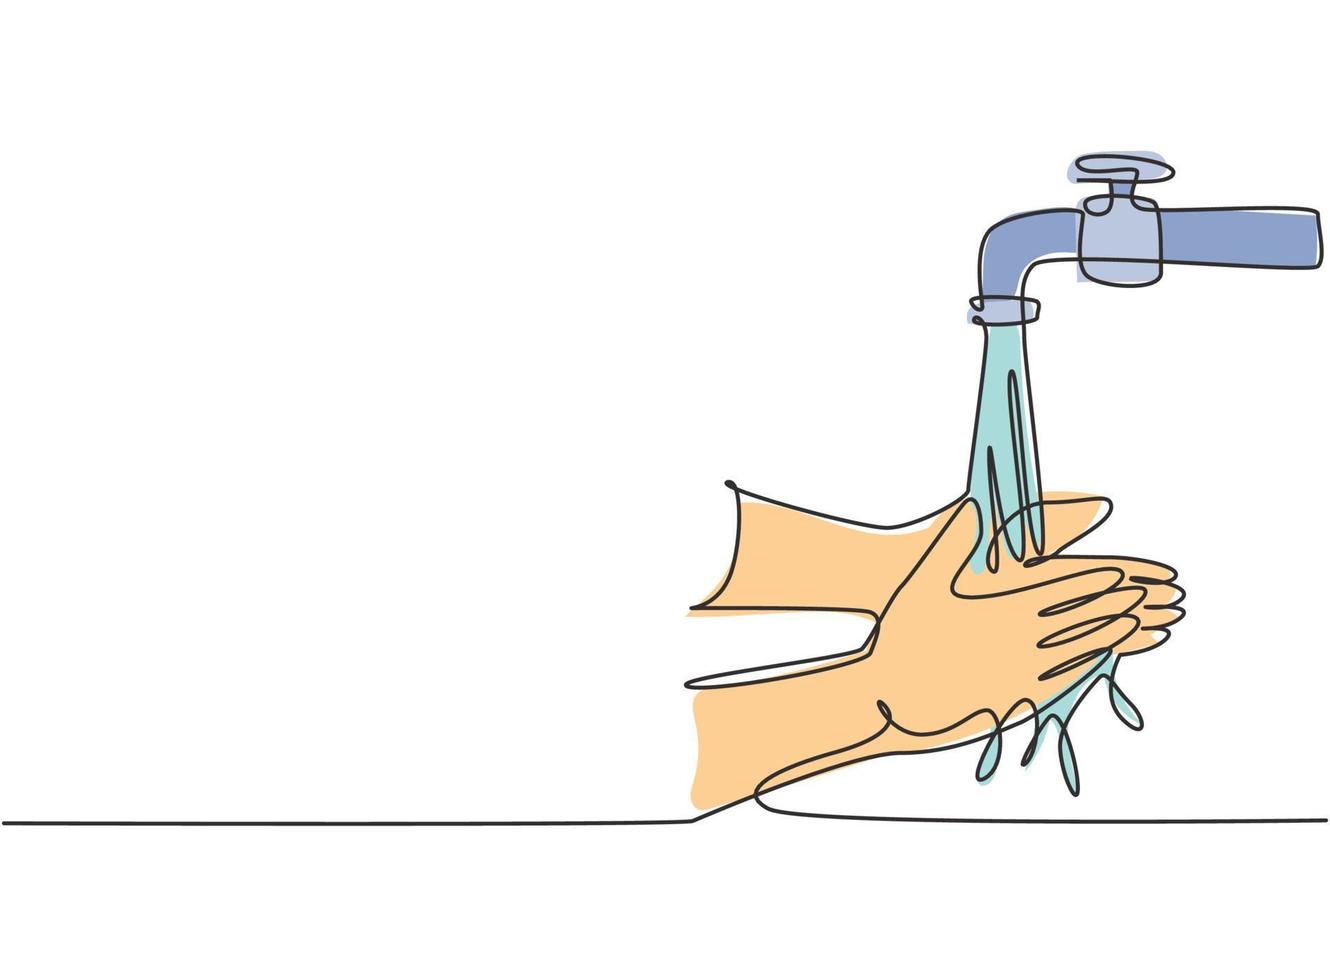 dessin continu d'une ligne de lavage des mains avec de l'eau propre renversée du robinet pour protéger les mains contre les germes, les bactéries, les virus. eau qui coule. illustration graphique de vecteur de conception de dessin à une seule ligne